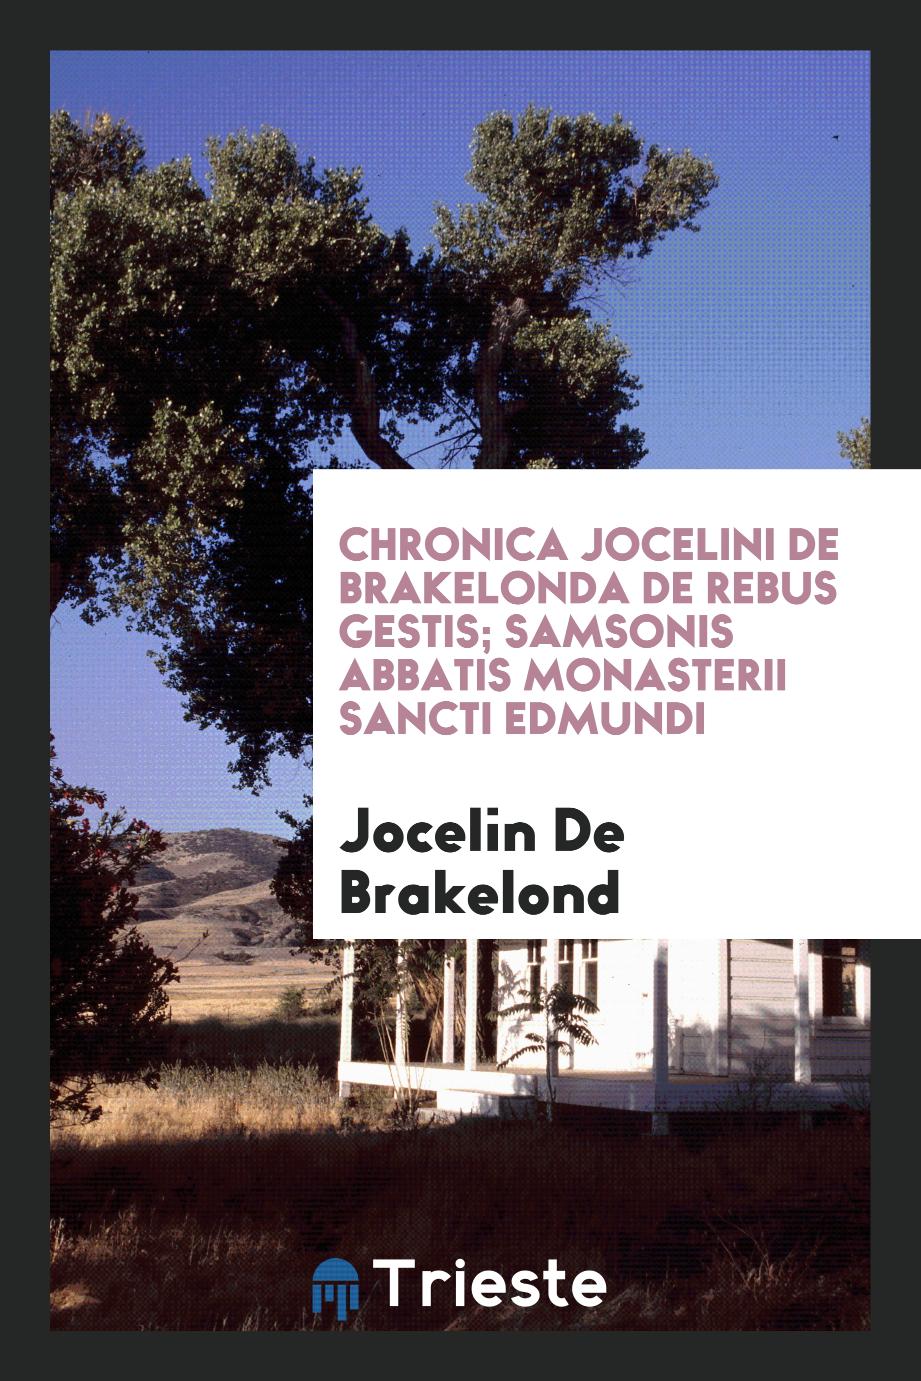 Chronica Jocelini De Brakelonda de rebus gestis; samsonis abbatis monasterii sancti edmundi